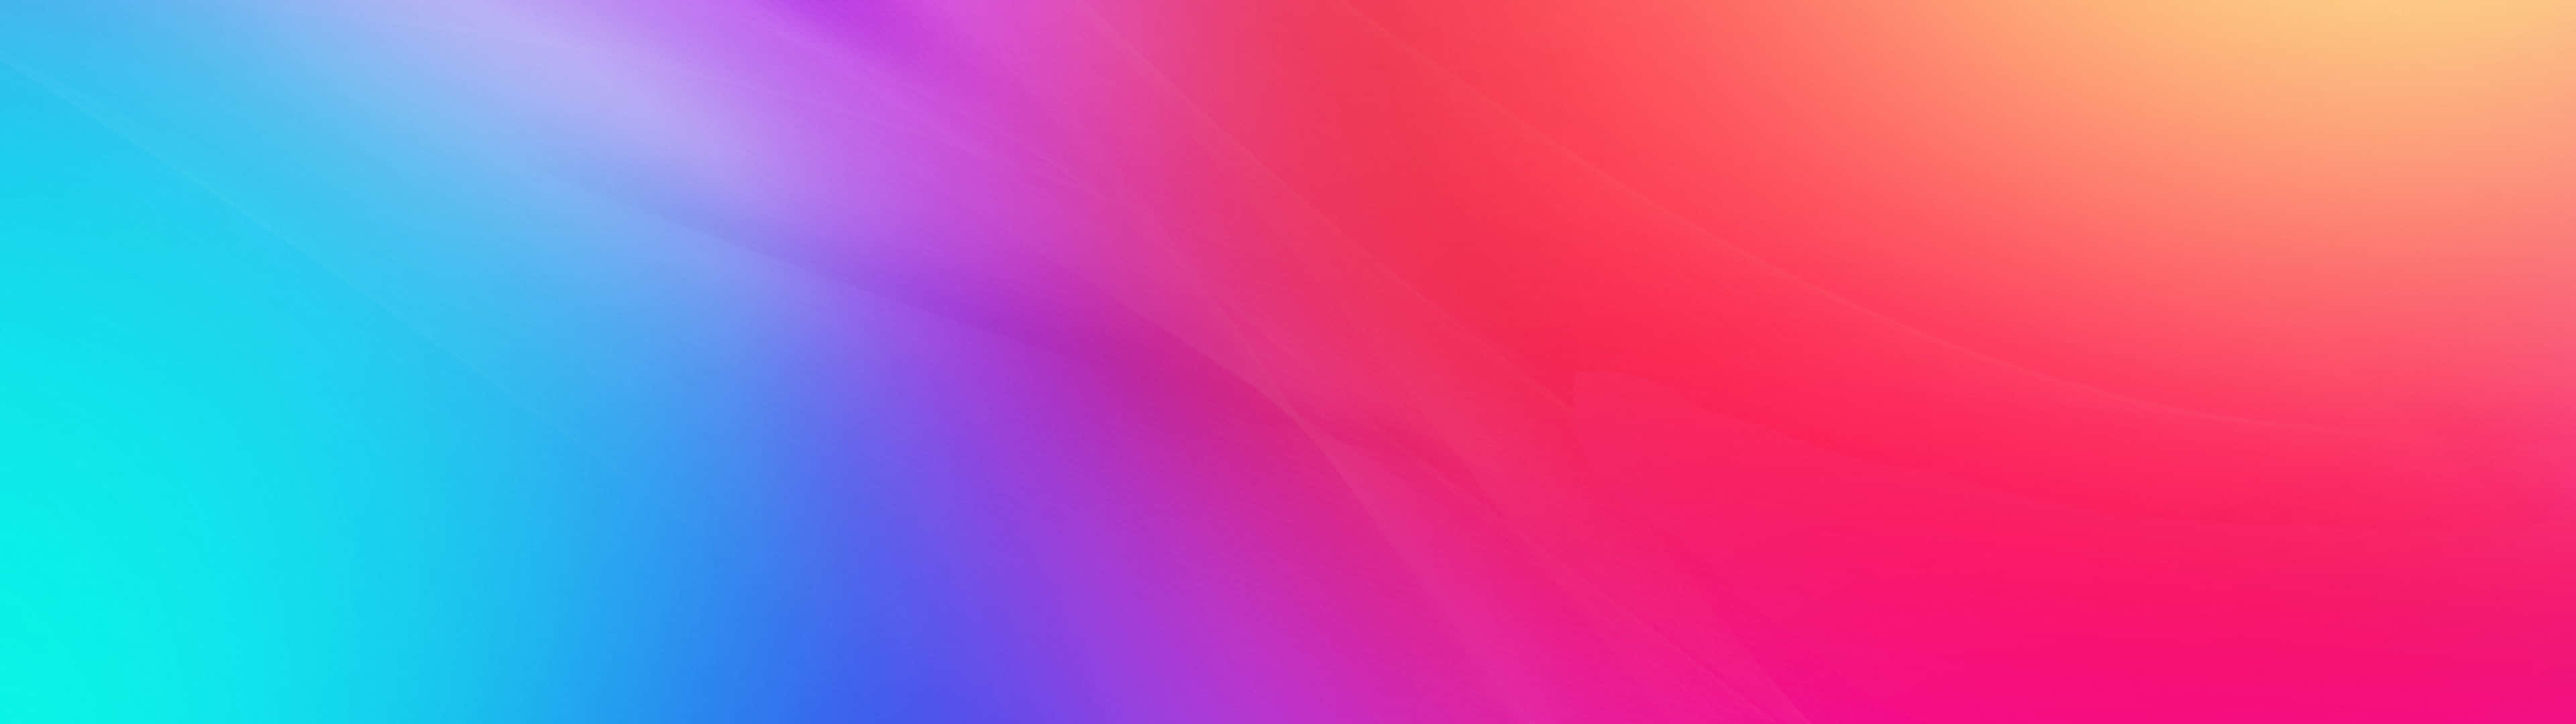 Pink Gradient Background 3840 X 1080